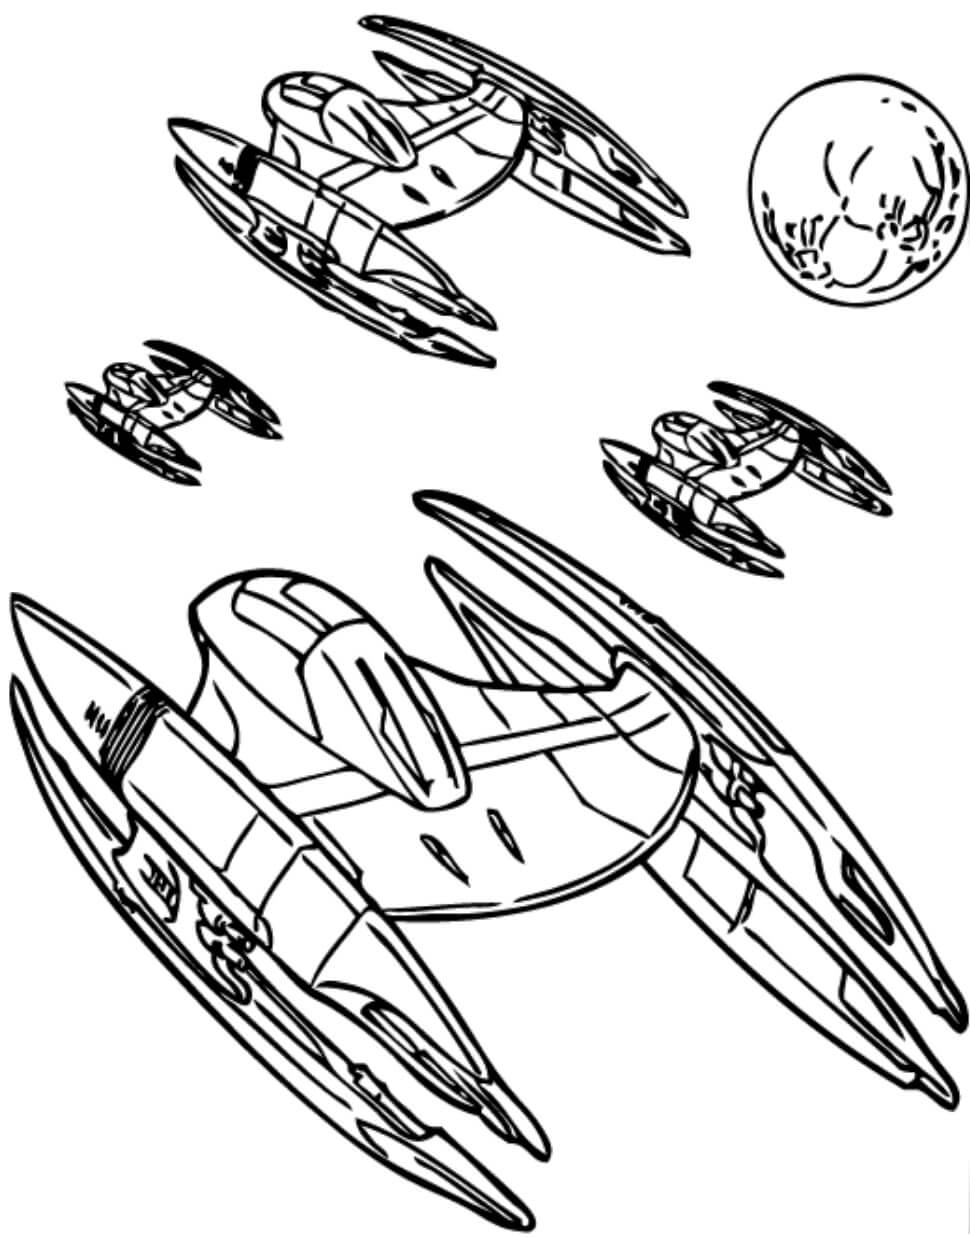 Naves espaciais da Federação do Comércio para colorir